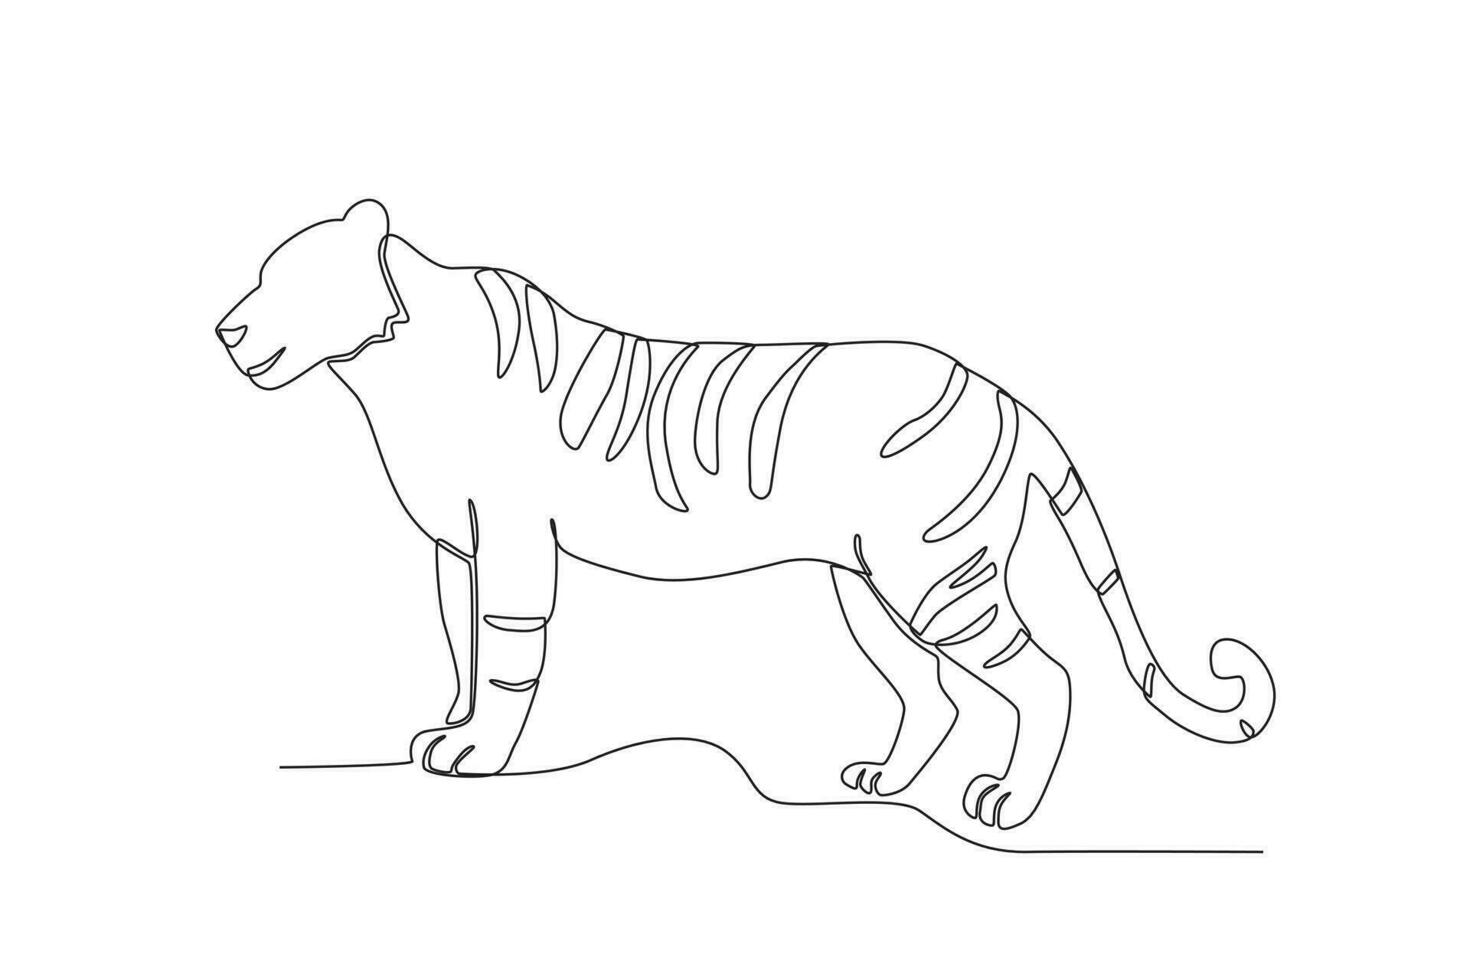 solteiro 1 linha desenhando do uma tigre. contínuo linha desenhar Projeto gráfico vetor ilustração.